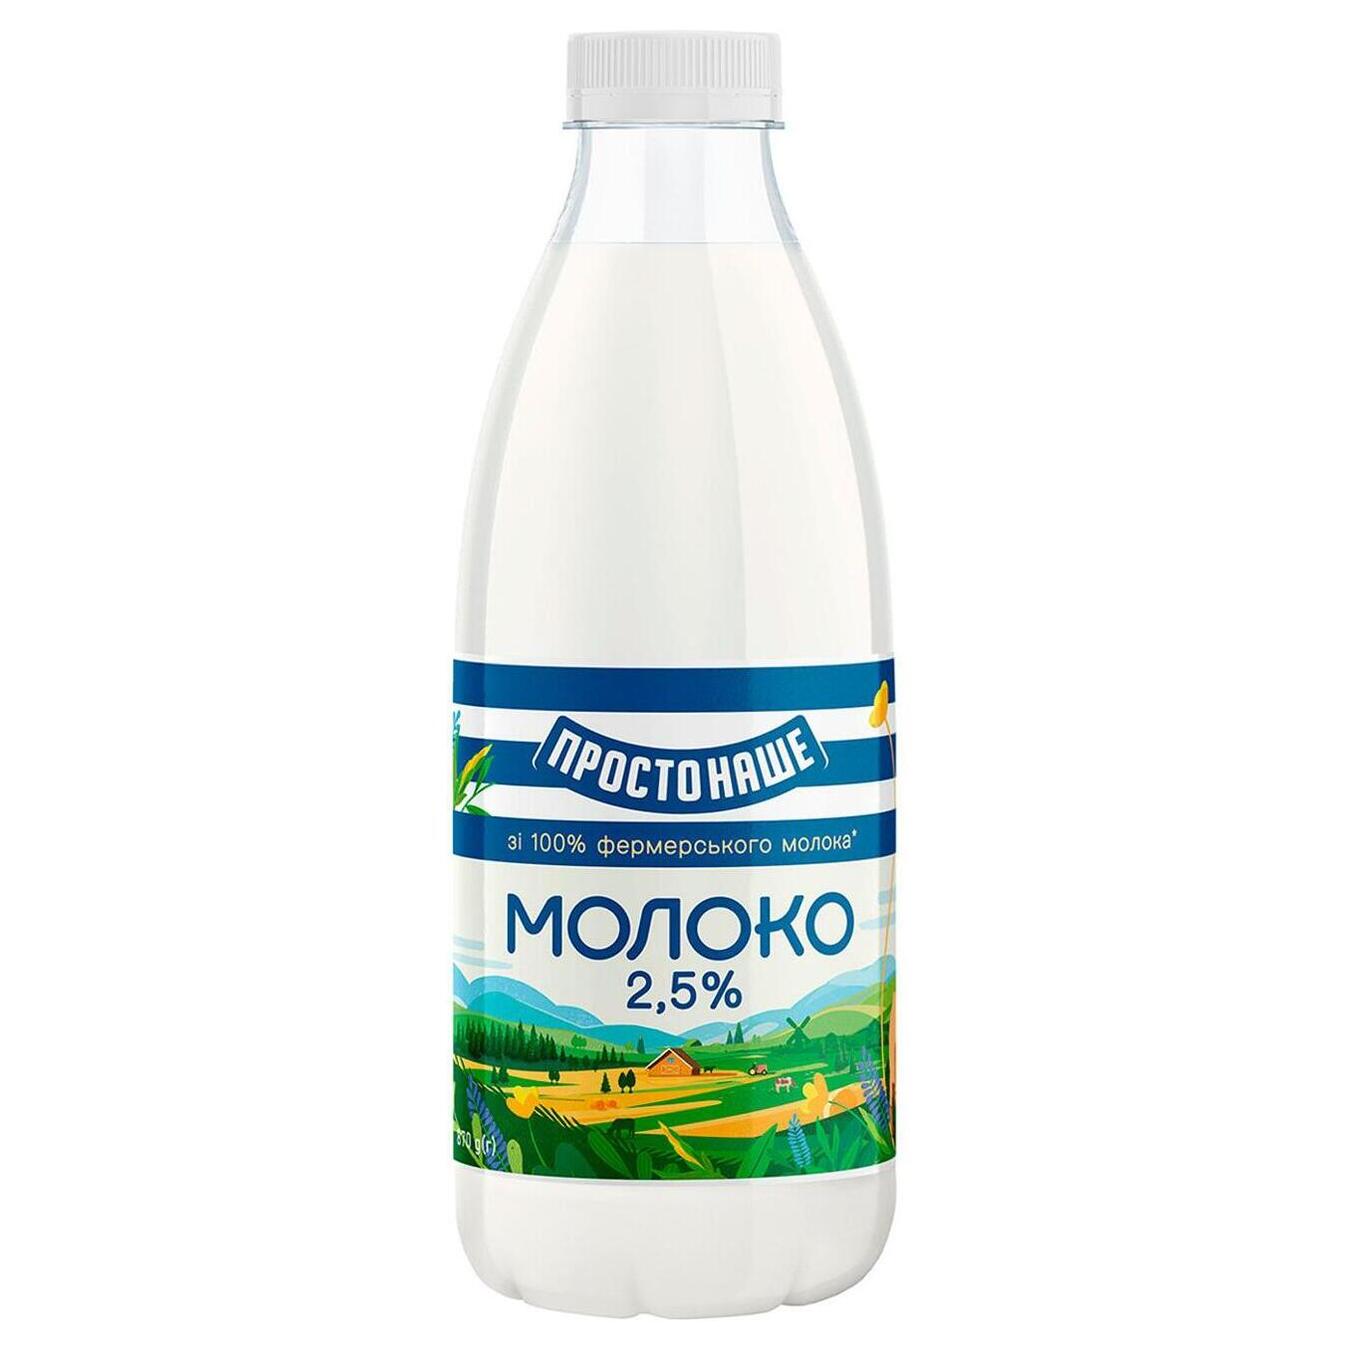 Молоко пастеризоване Простонаше 2,5% пет 870